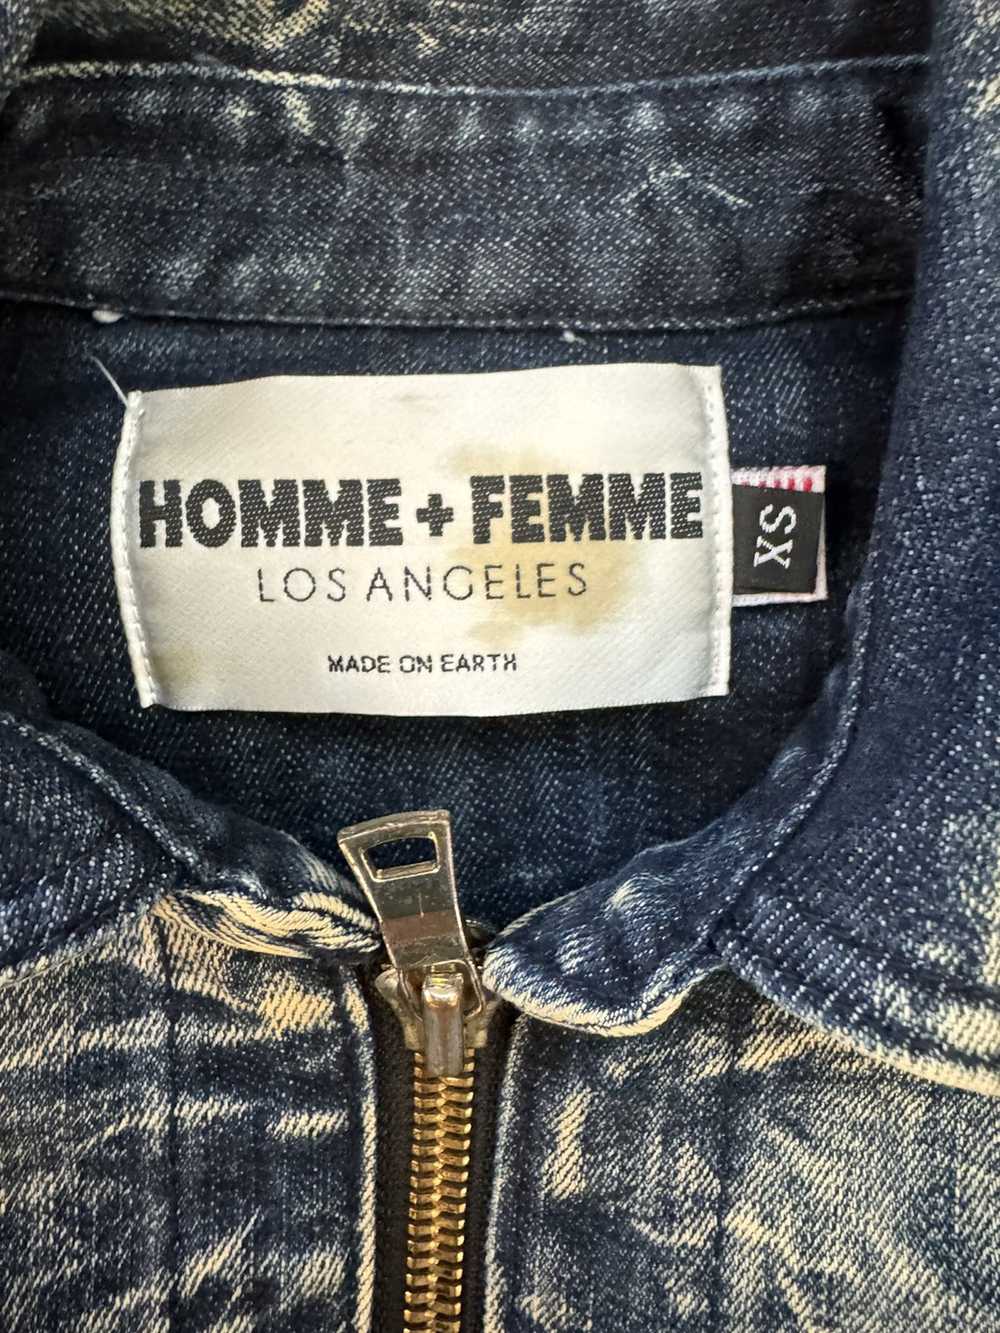 Homme + Femme La Homme+Femme denim zip up shirt - image 2